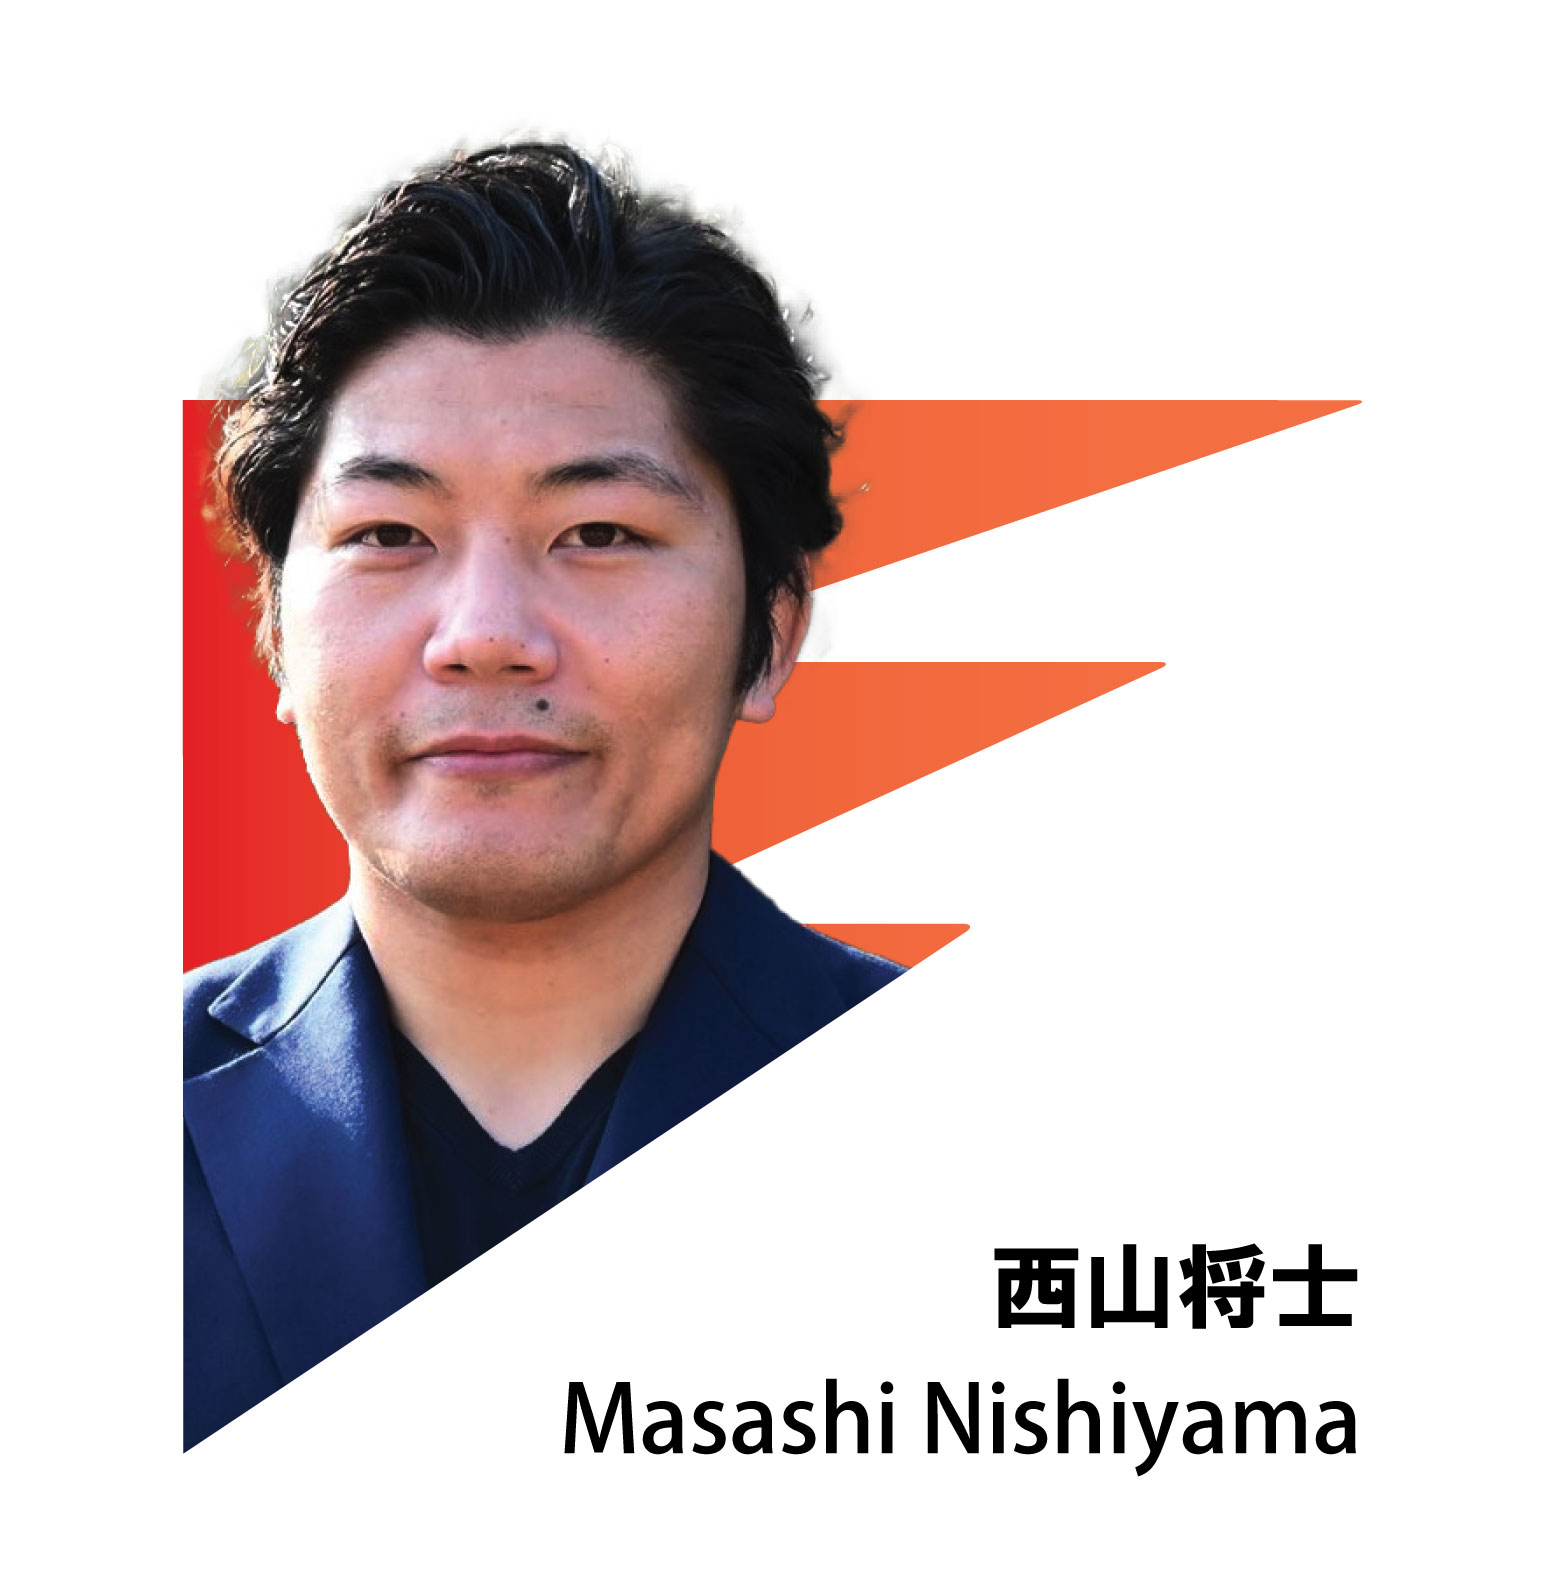 MASASHI NISHIYAMA